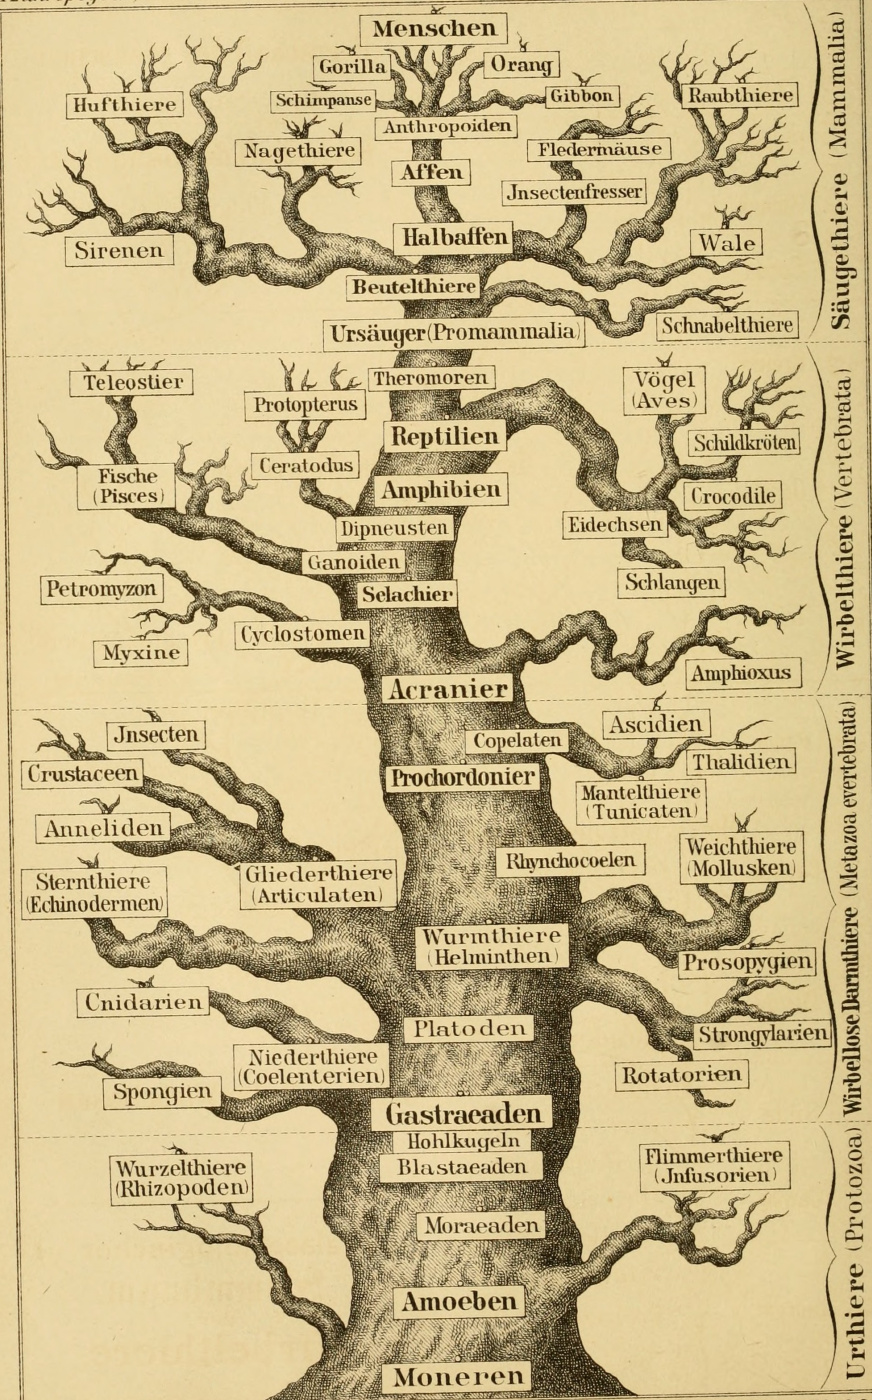 Ernst Heinrich Haeckel. Genealogy. "Anthropology and human development"